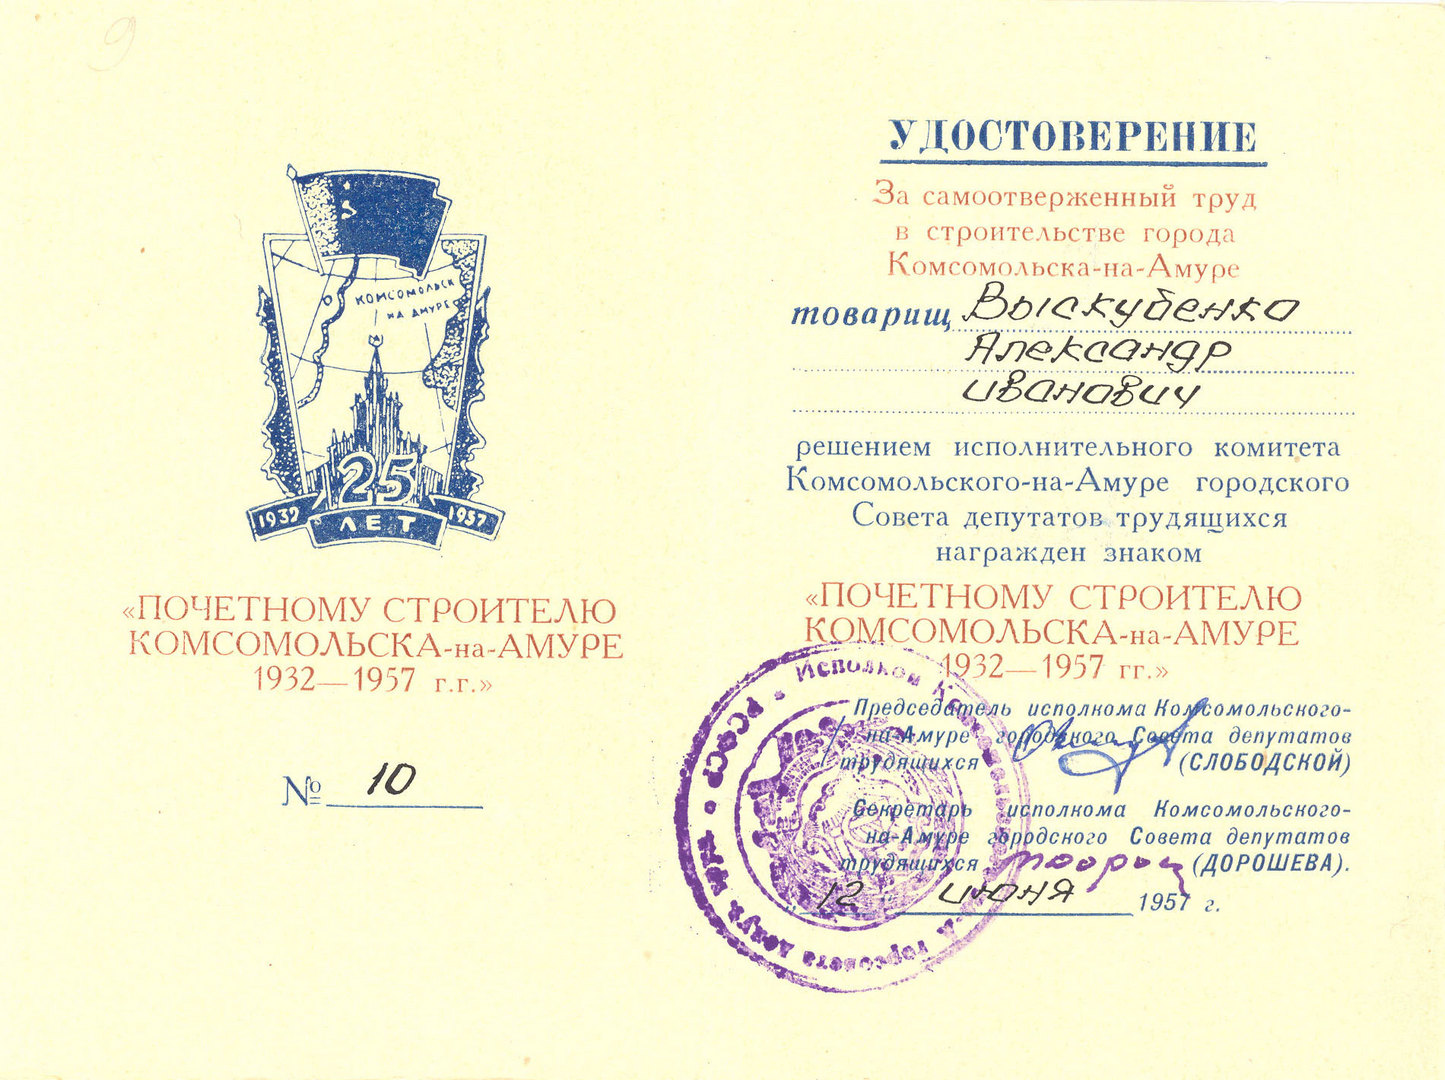 Удостоверение №10 к знаку 'Почётному строителю Комсомольска н-А 1932-1957 г.г.' Выскубенко Александра Ивановича. 12.06.1957